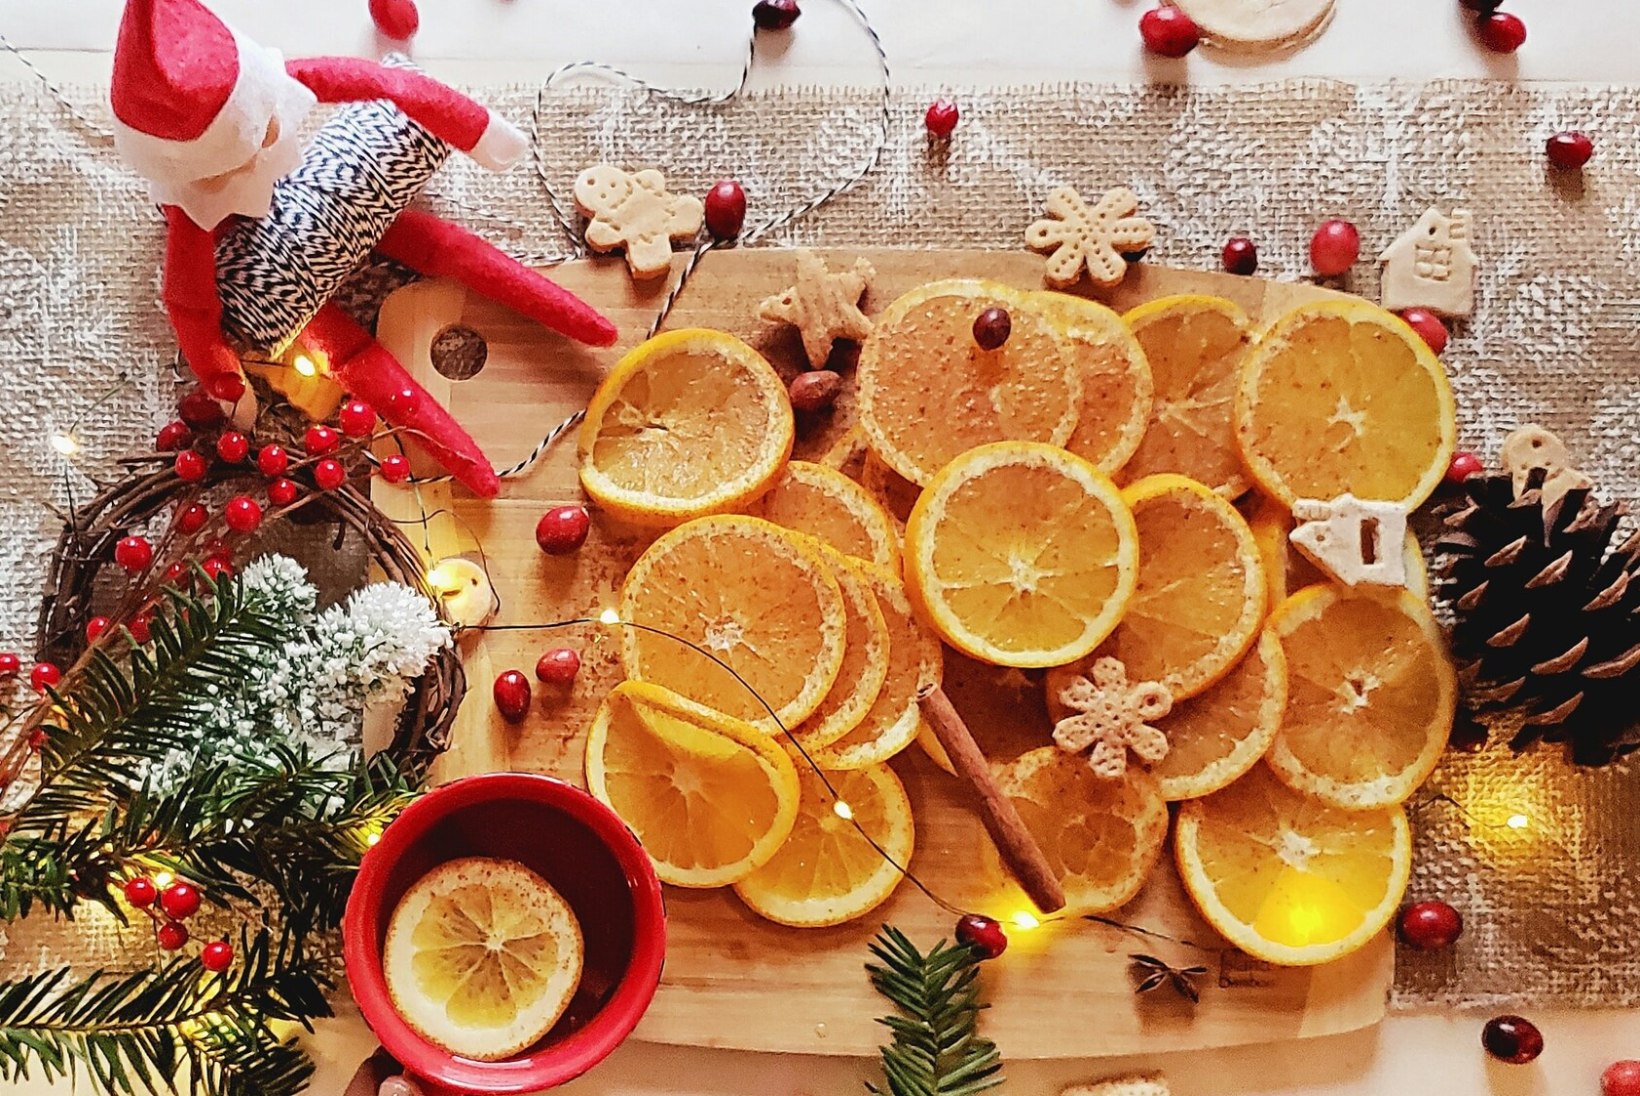 NÄDALAMENÜÜ | 6.–12. detsember: tervislik ja mahlane apelsin aitab luua jõulumeeleolu